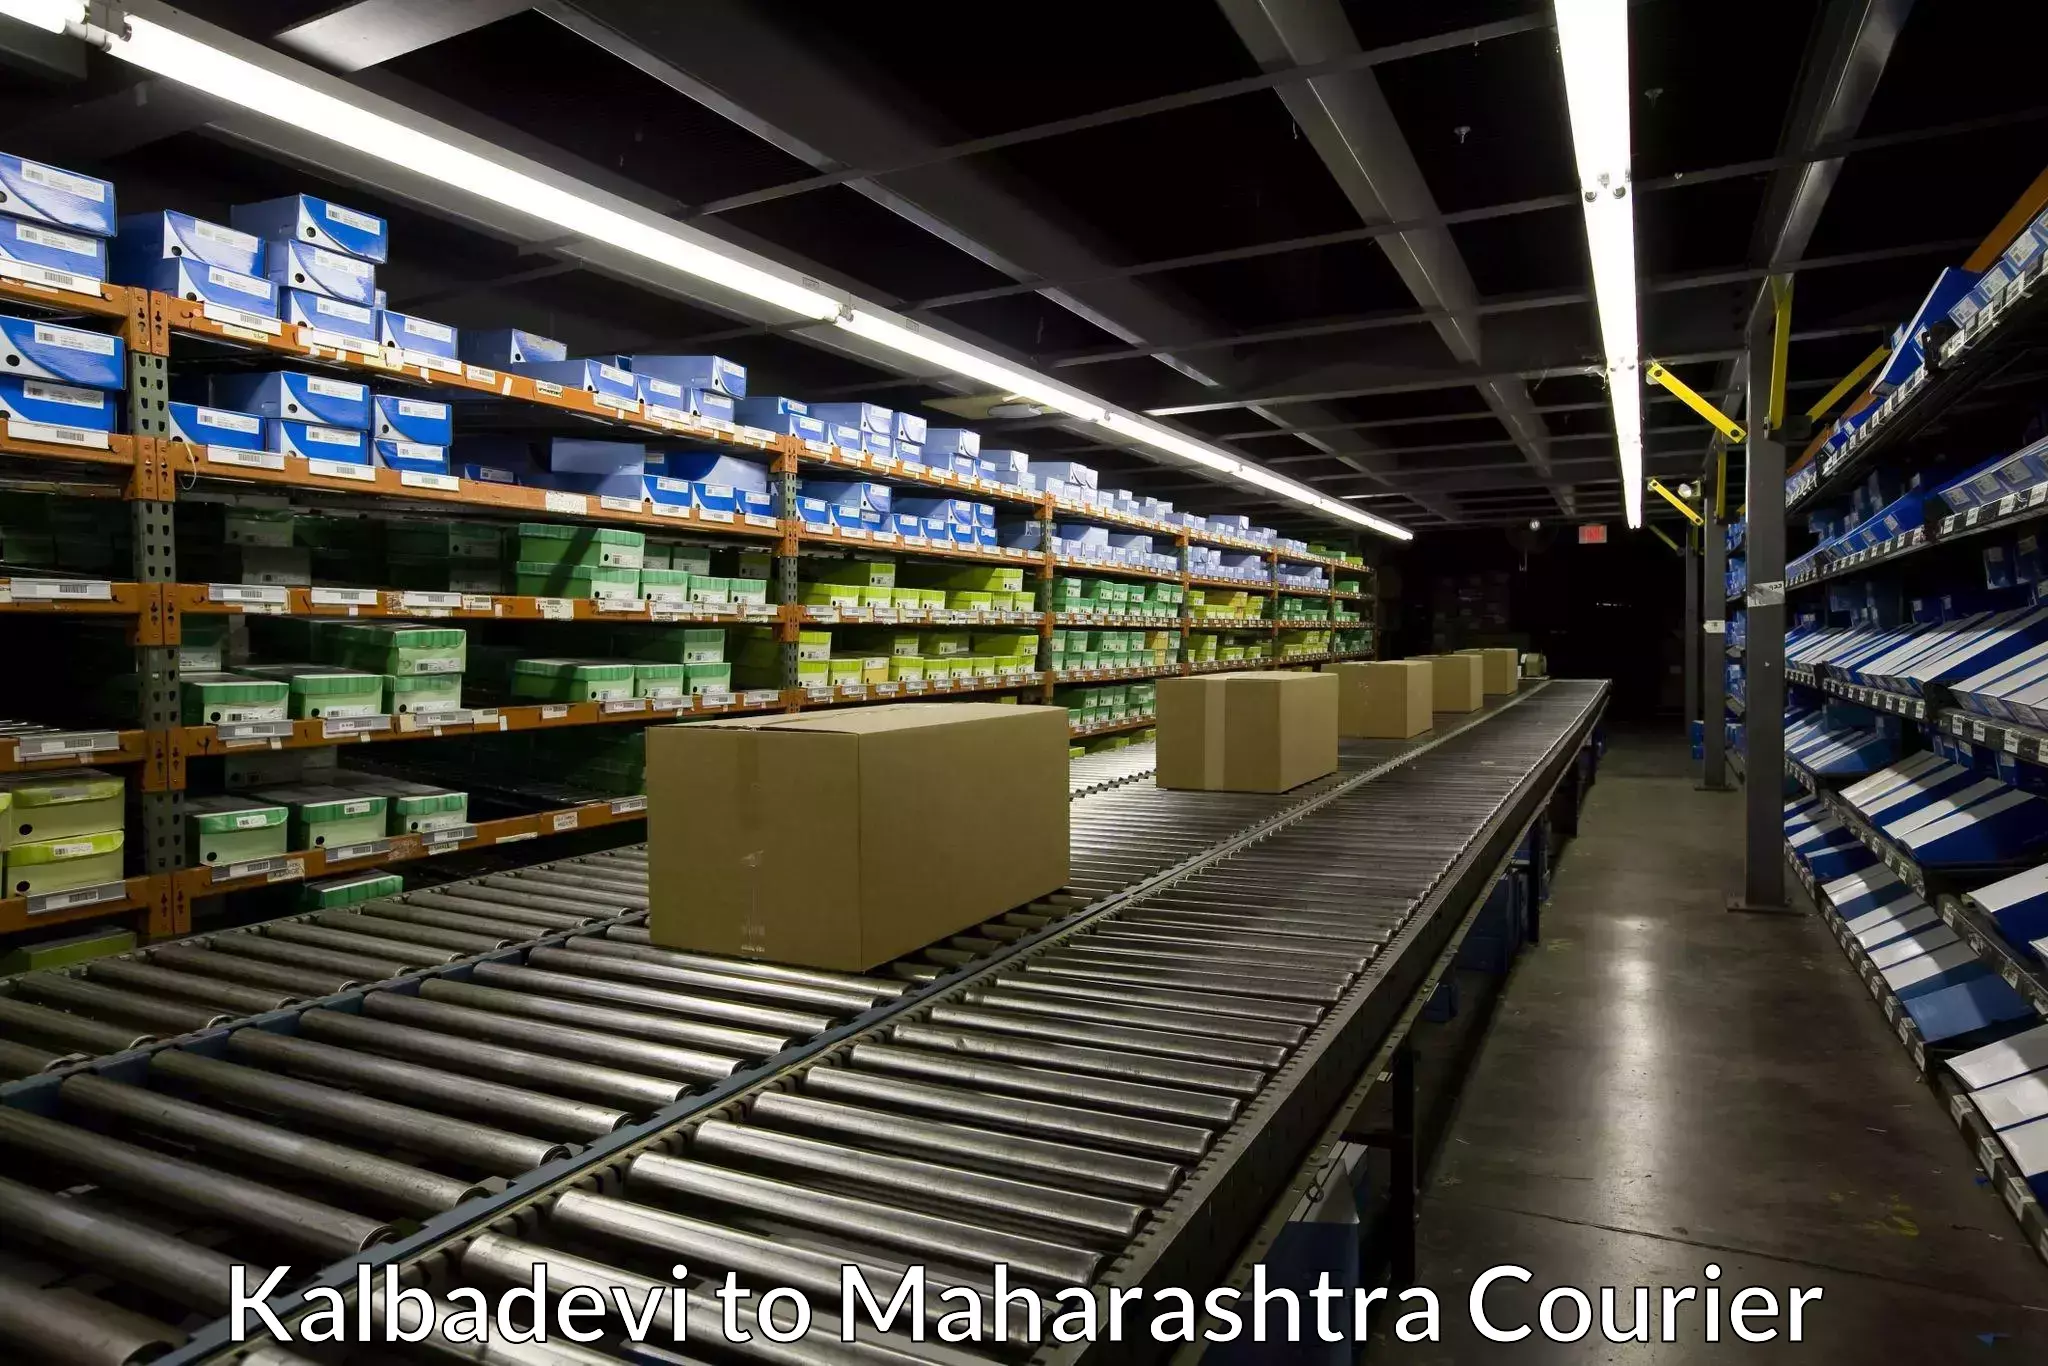 Door-to-door freight service Kalbadevi to Maharashtra